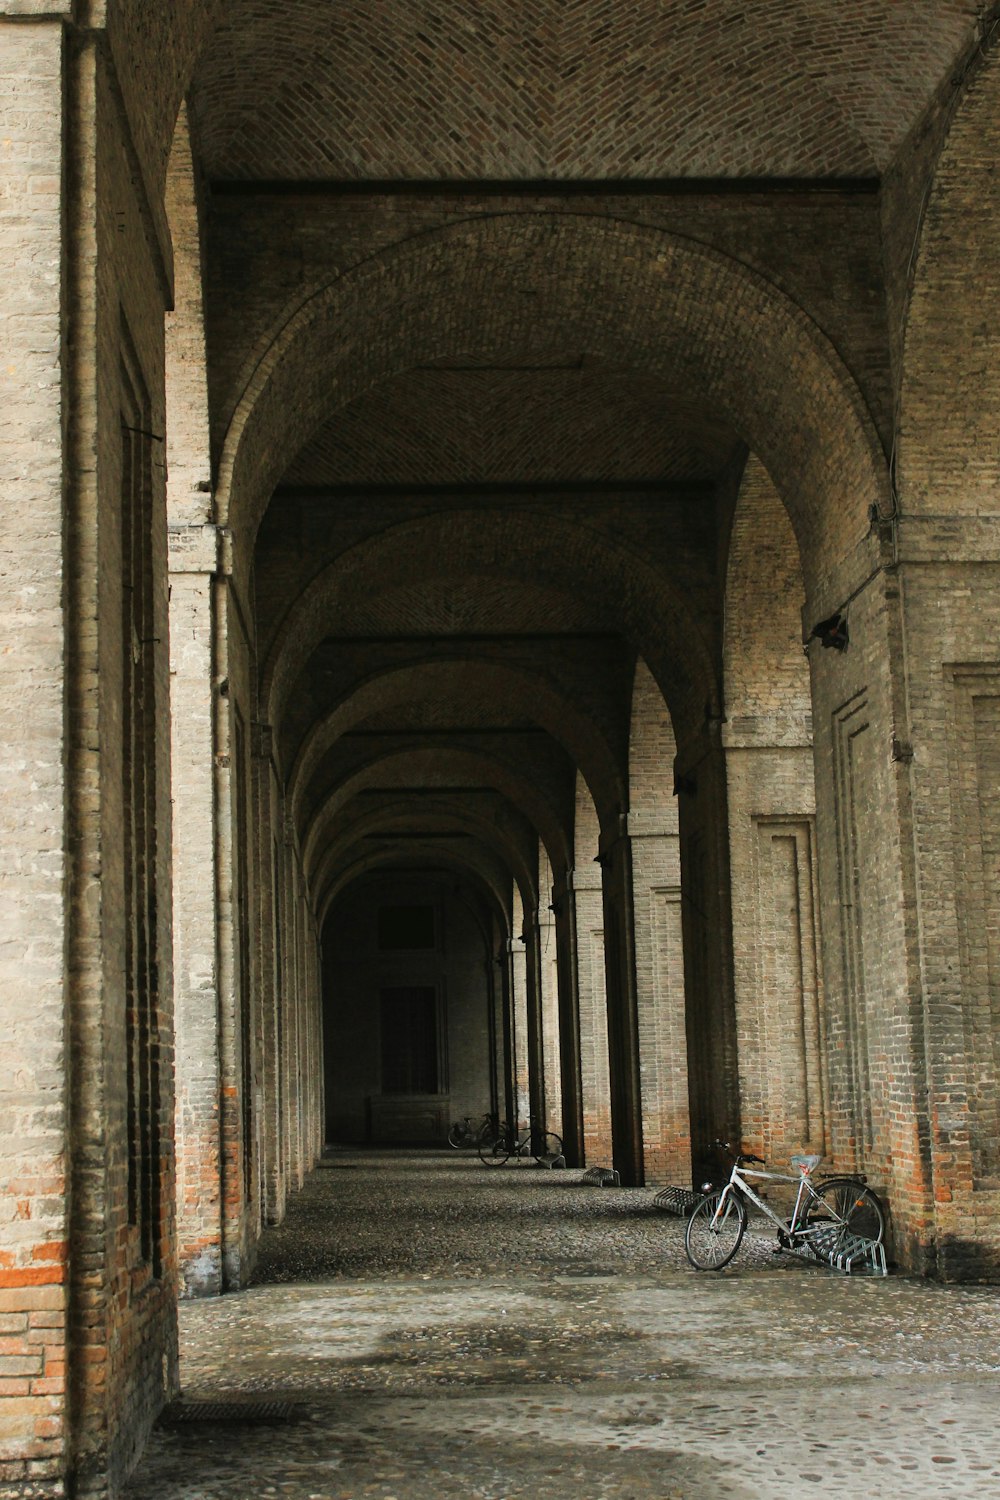 Ein Fahrrad steht in einem Tunnel zwischen zwei Gebäuden